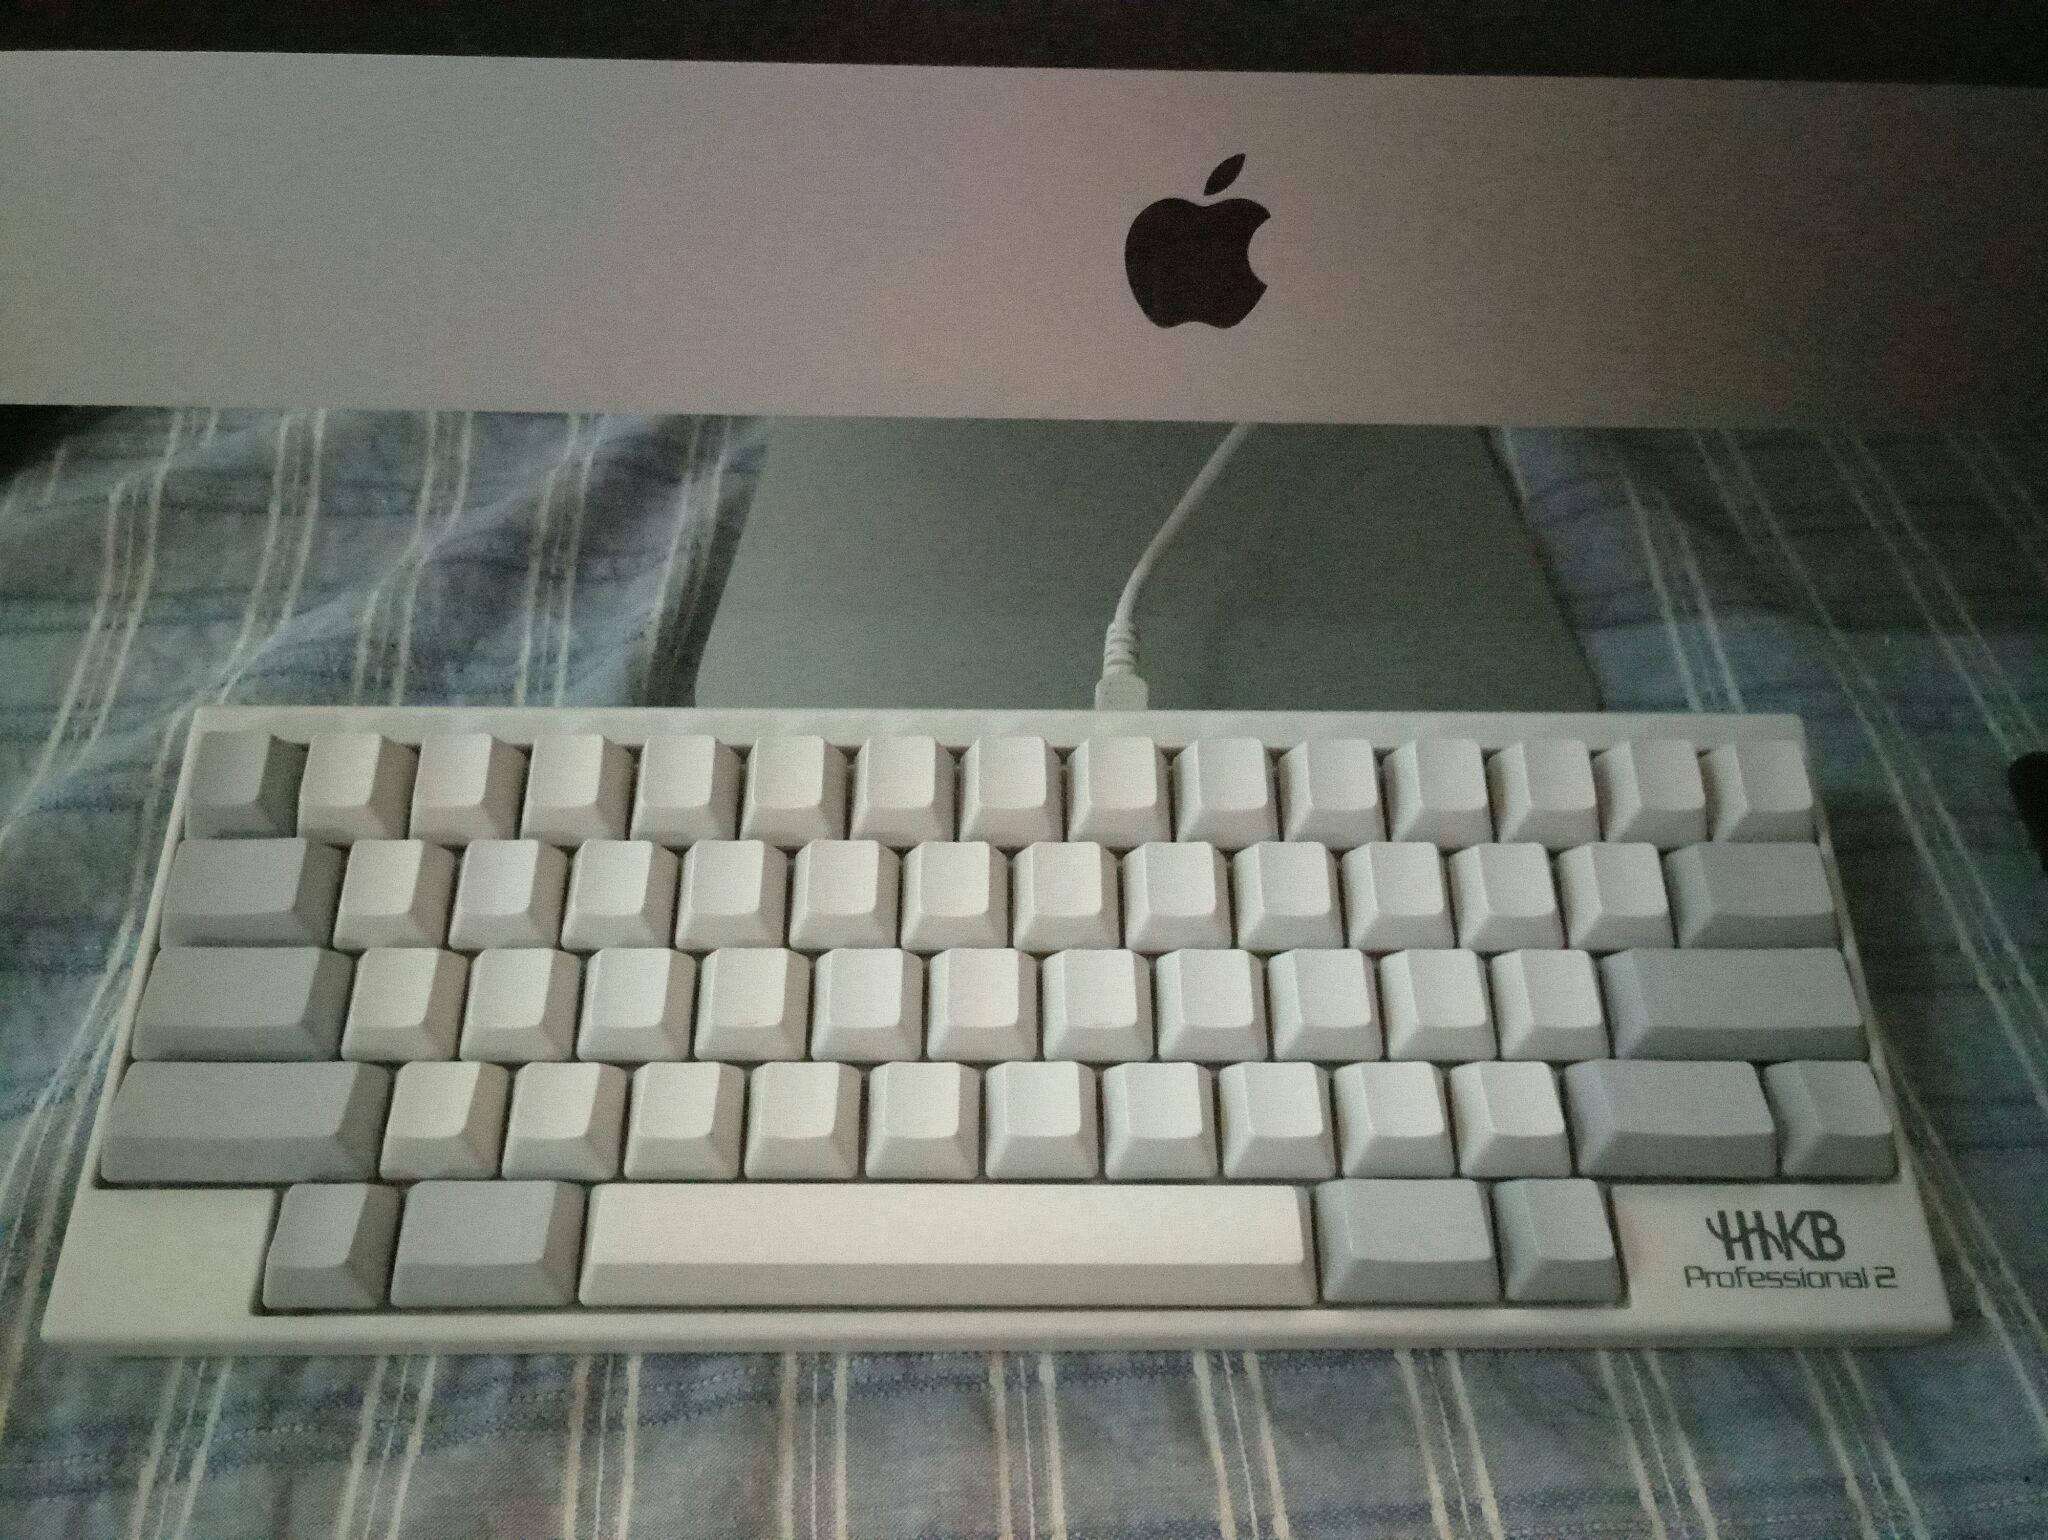 托日本留学的朋友,代购了一款HHKB键盘(Pro2